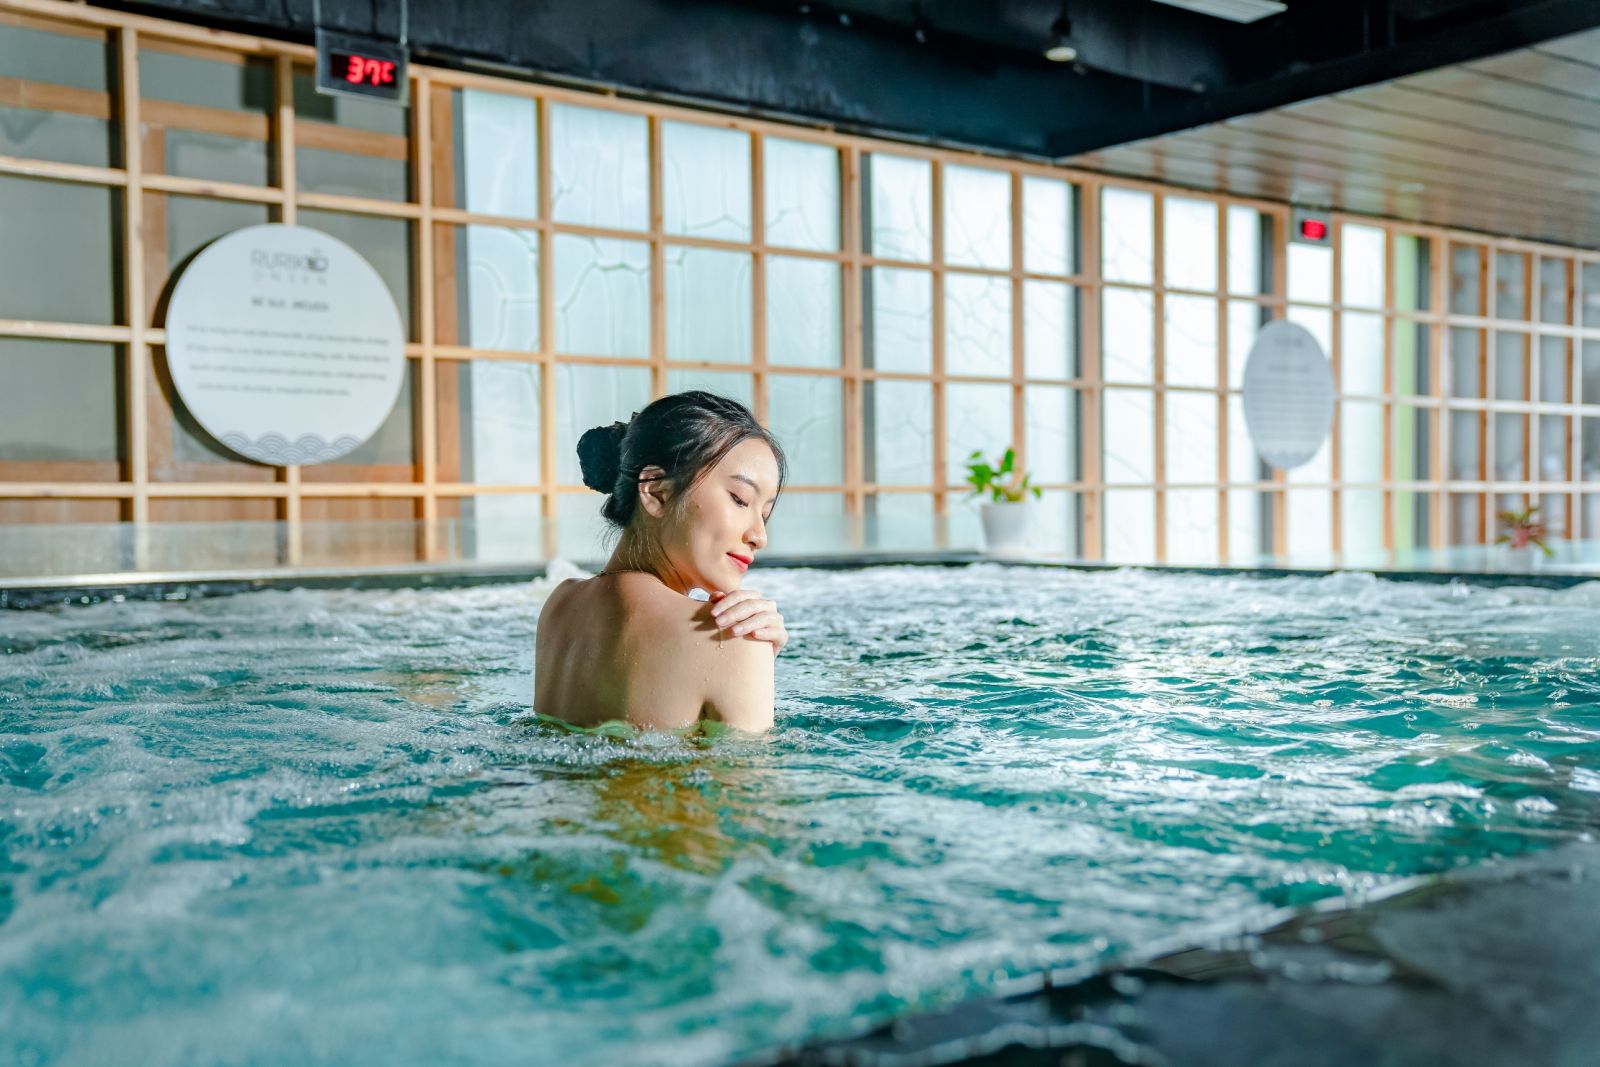 Trải nghiệm tắm khoáng nóng Onsen giúp tinh thần thoải mái, giải tỏa căng thẳngv